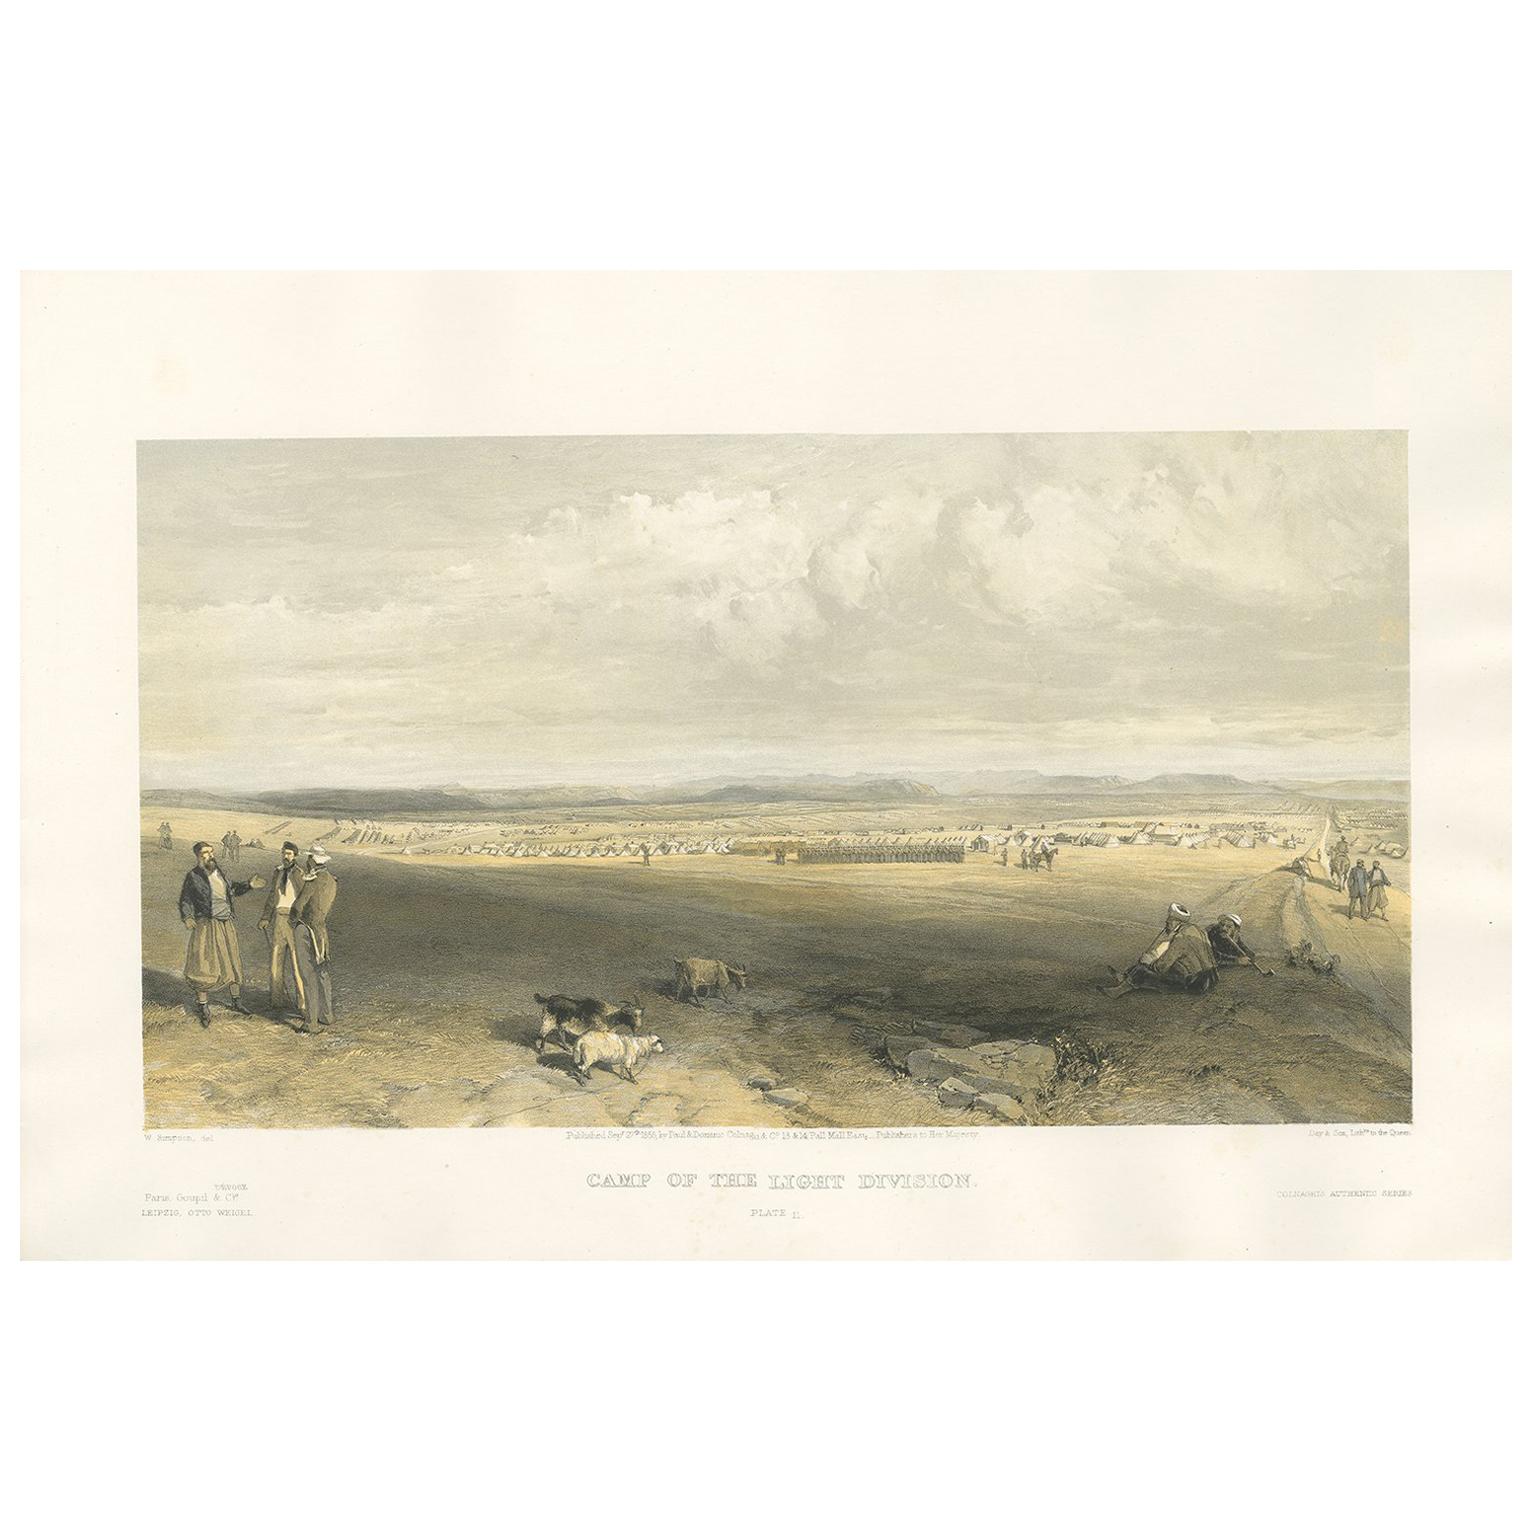 Impression ancienne du Camp of Light Division (la guerre de Crimée) par W. Simpson, 1855